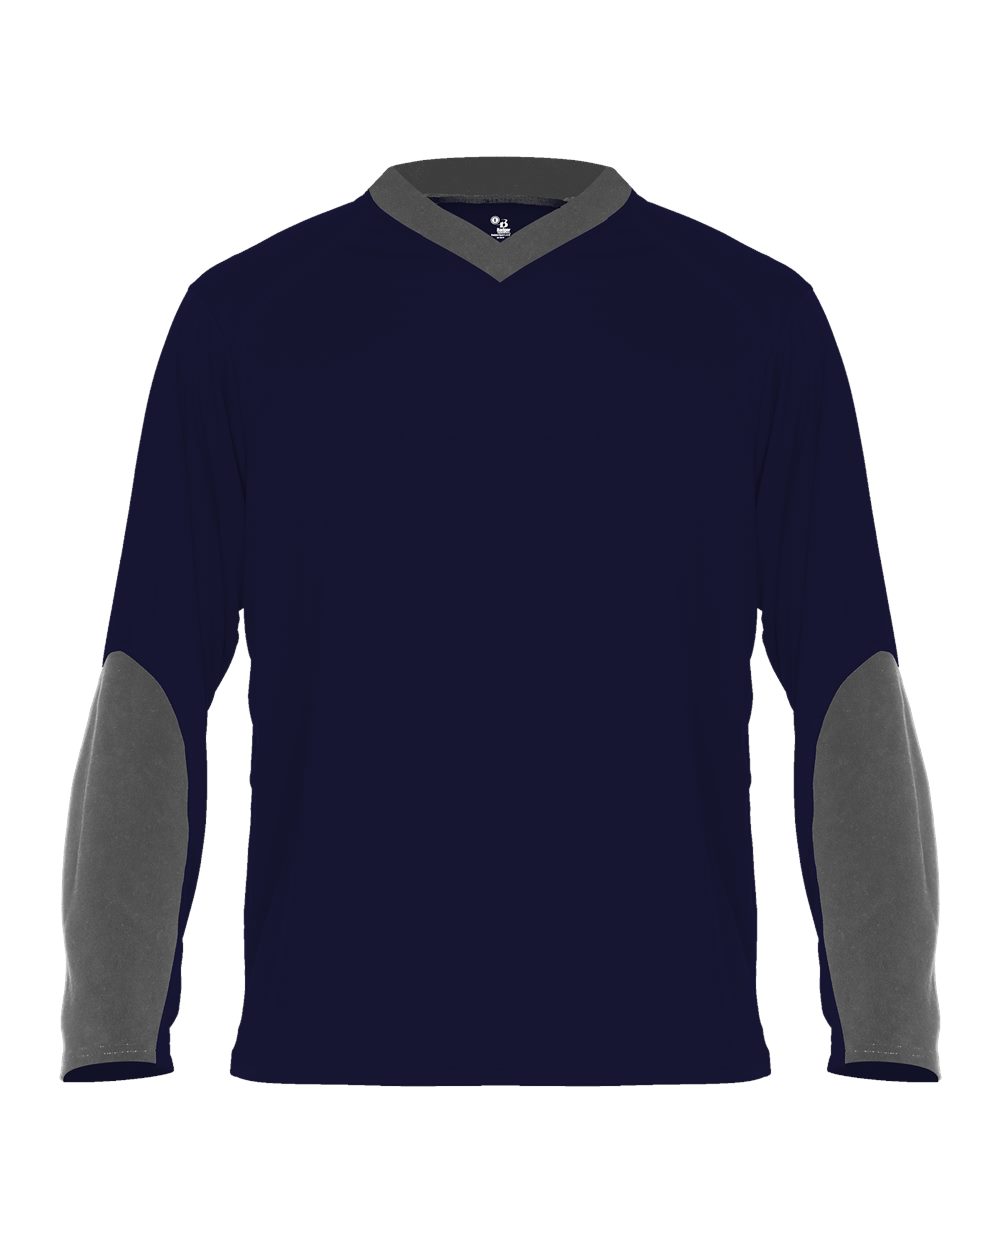 Badger 4264 - Sweatless Long Sleeve T-Shirt